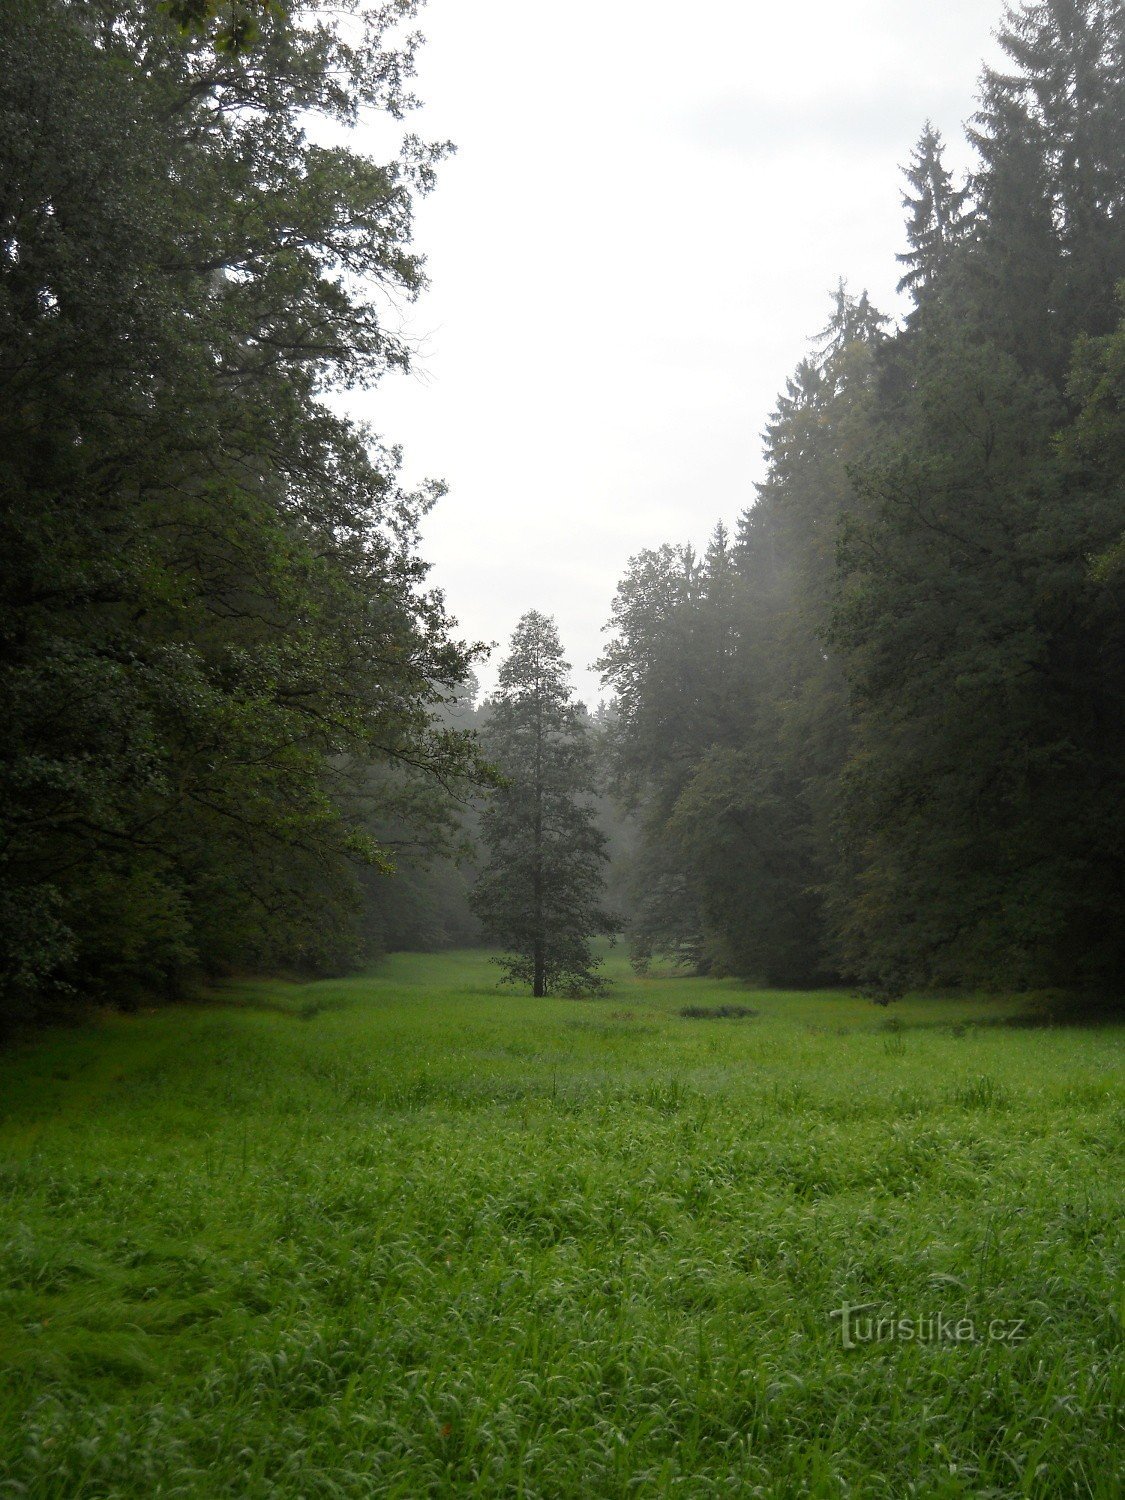 Thung lũng Terčino - đồng cỏ